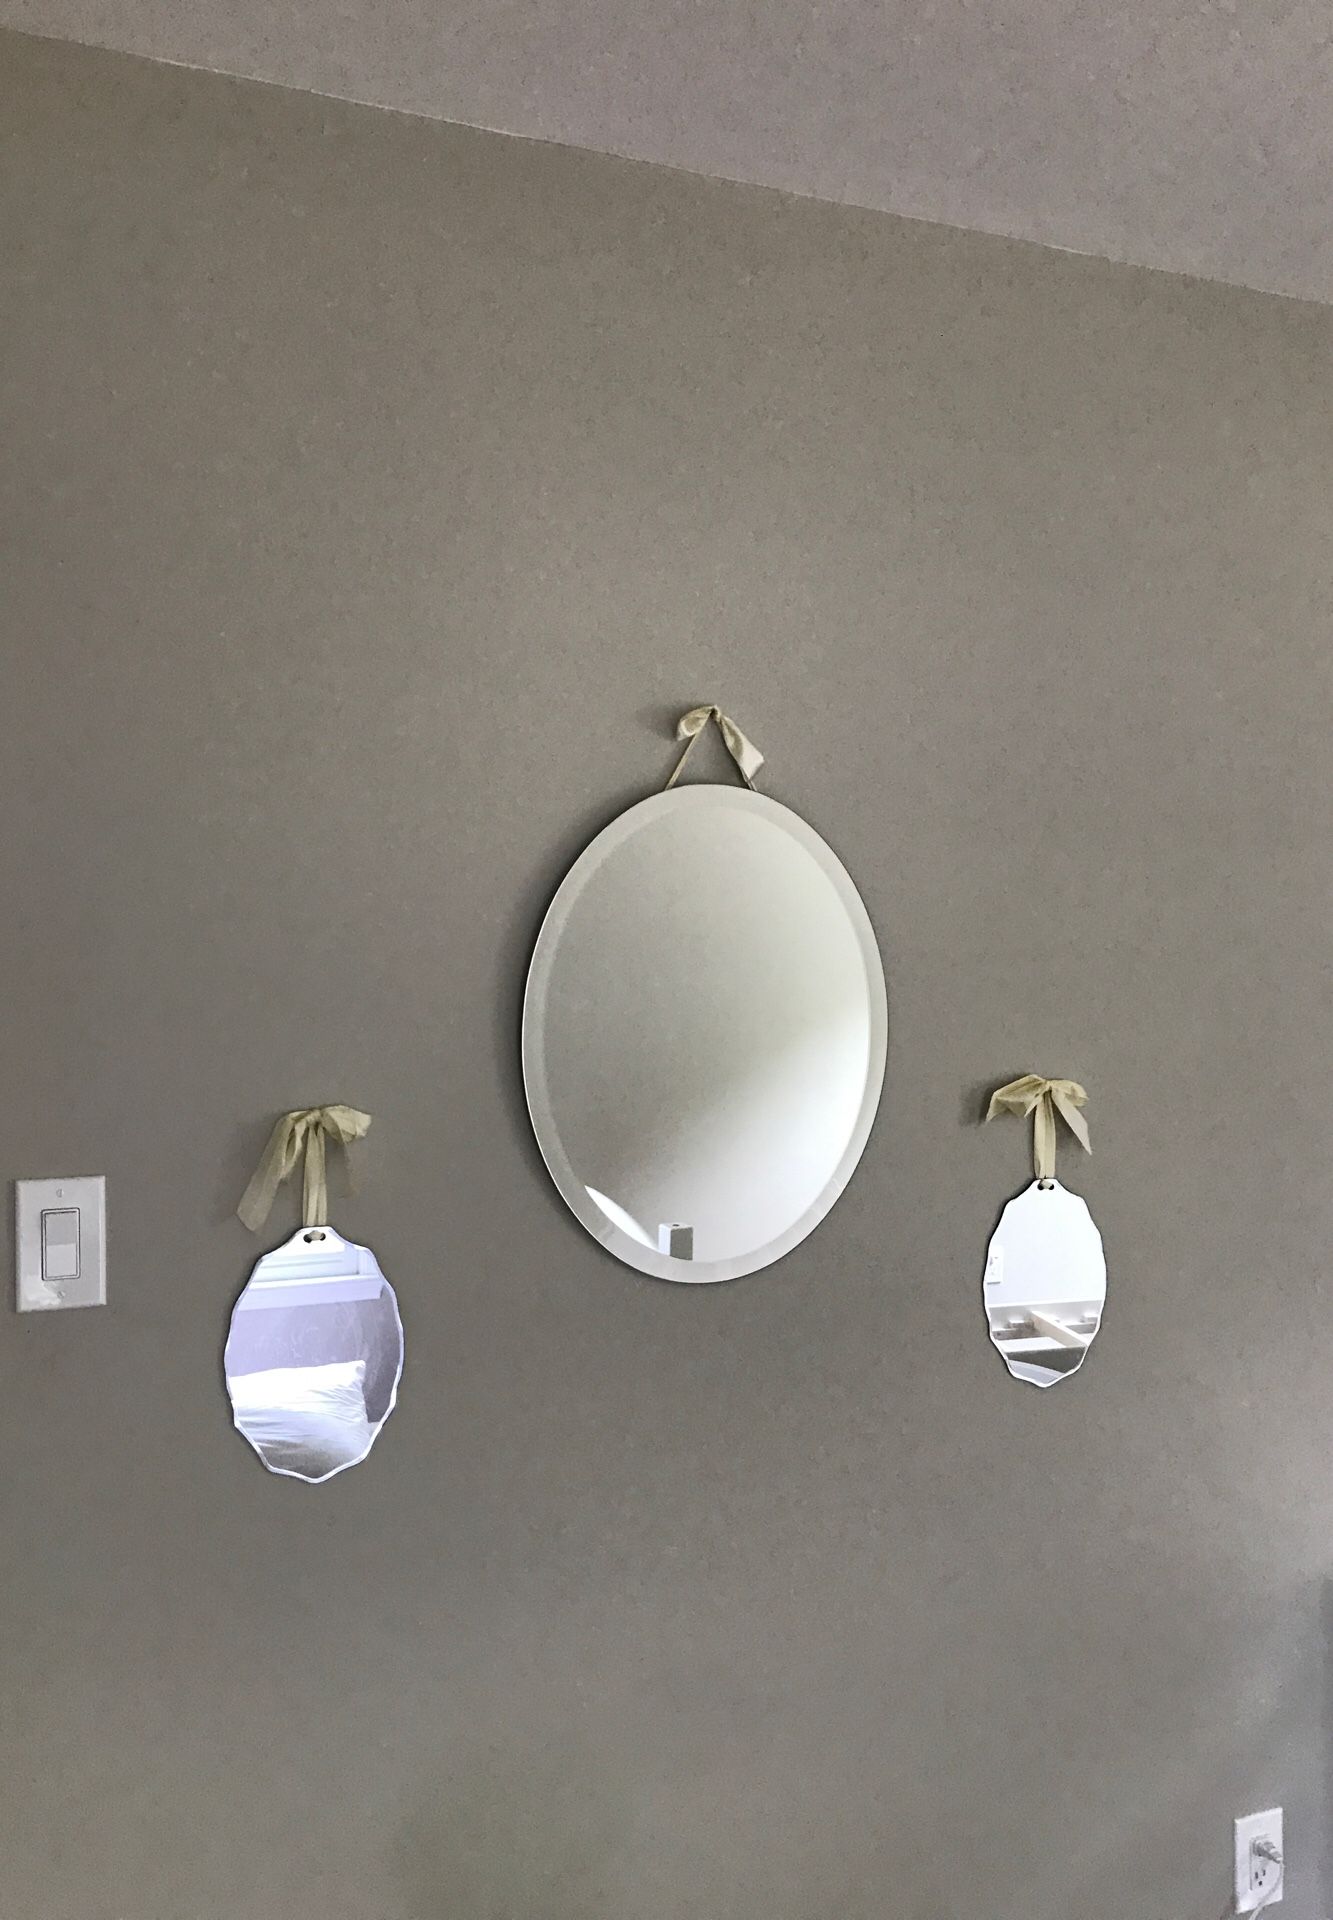 Sweet mirror wall hangings